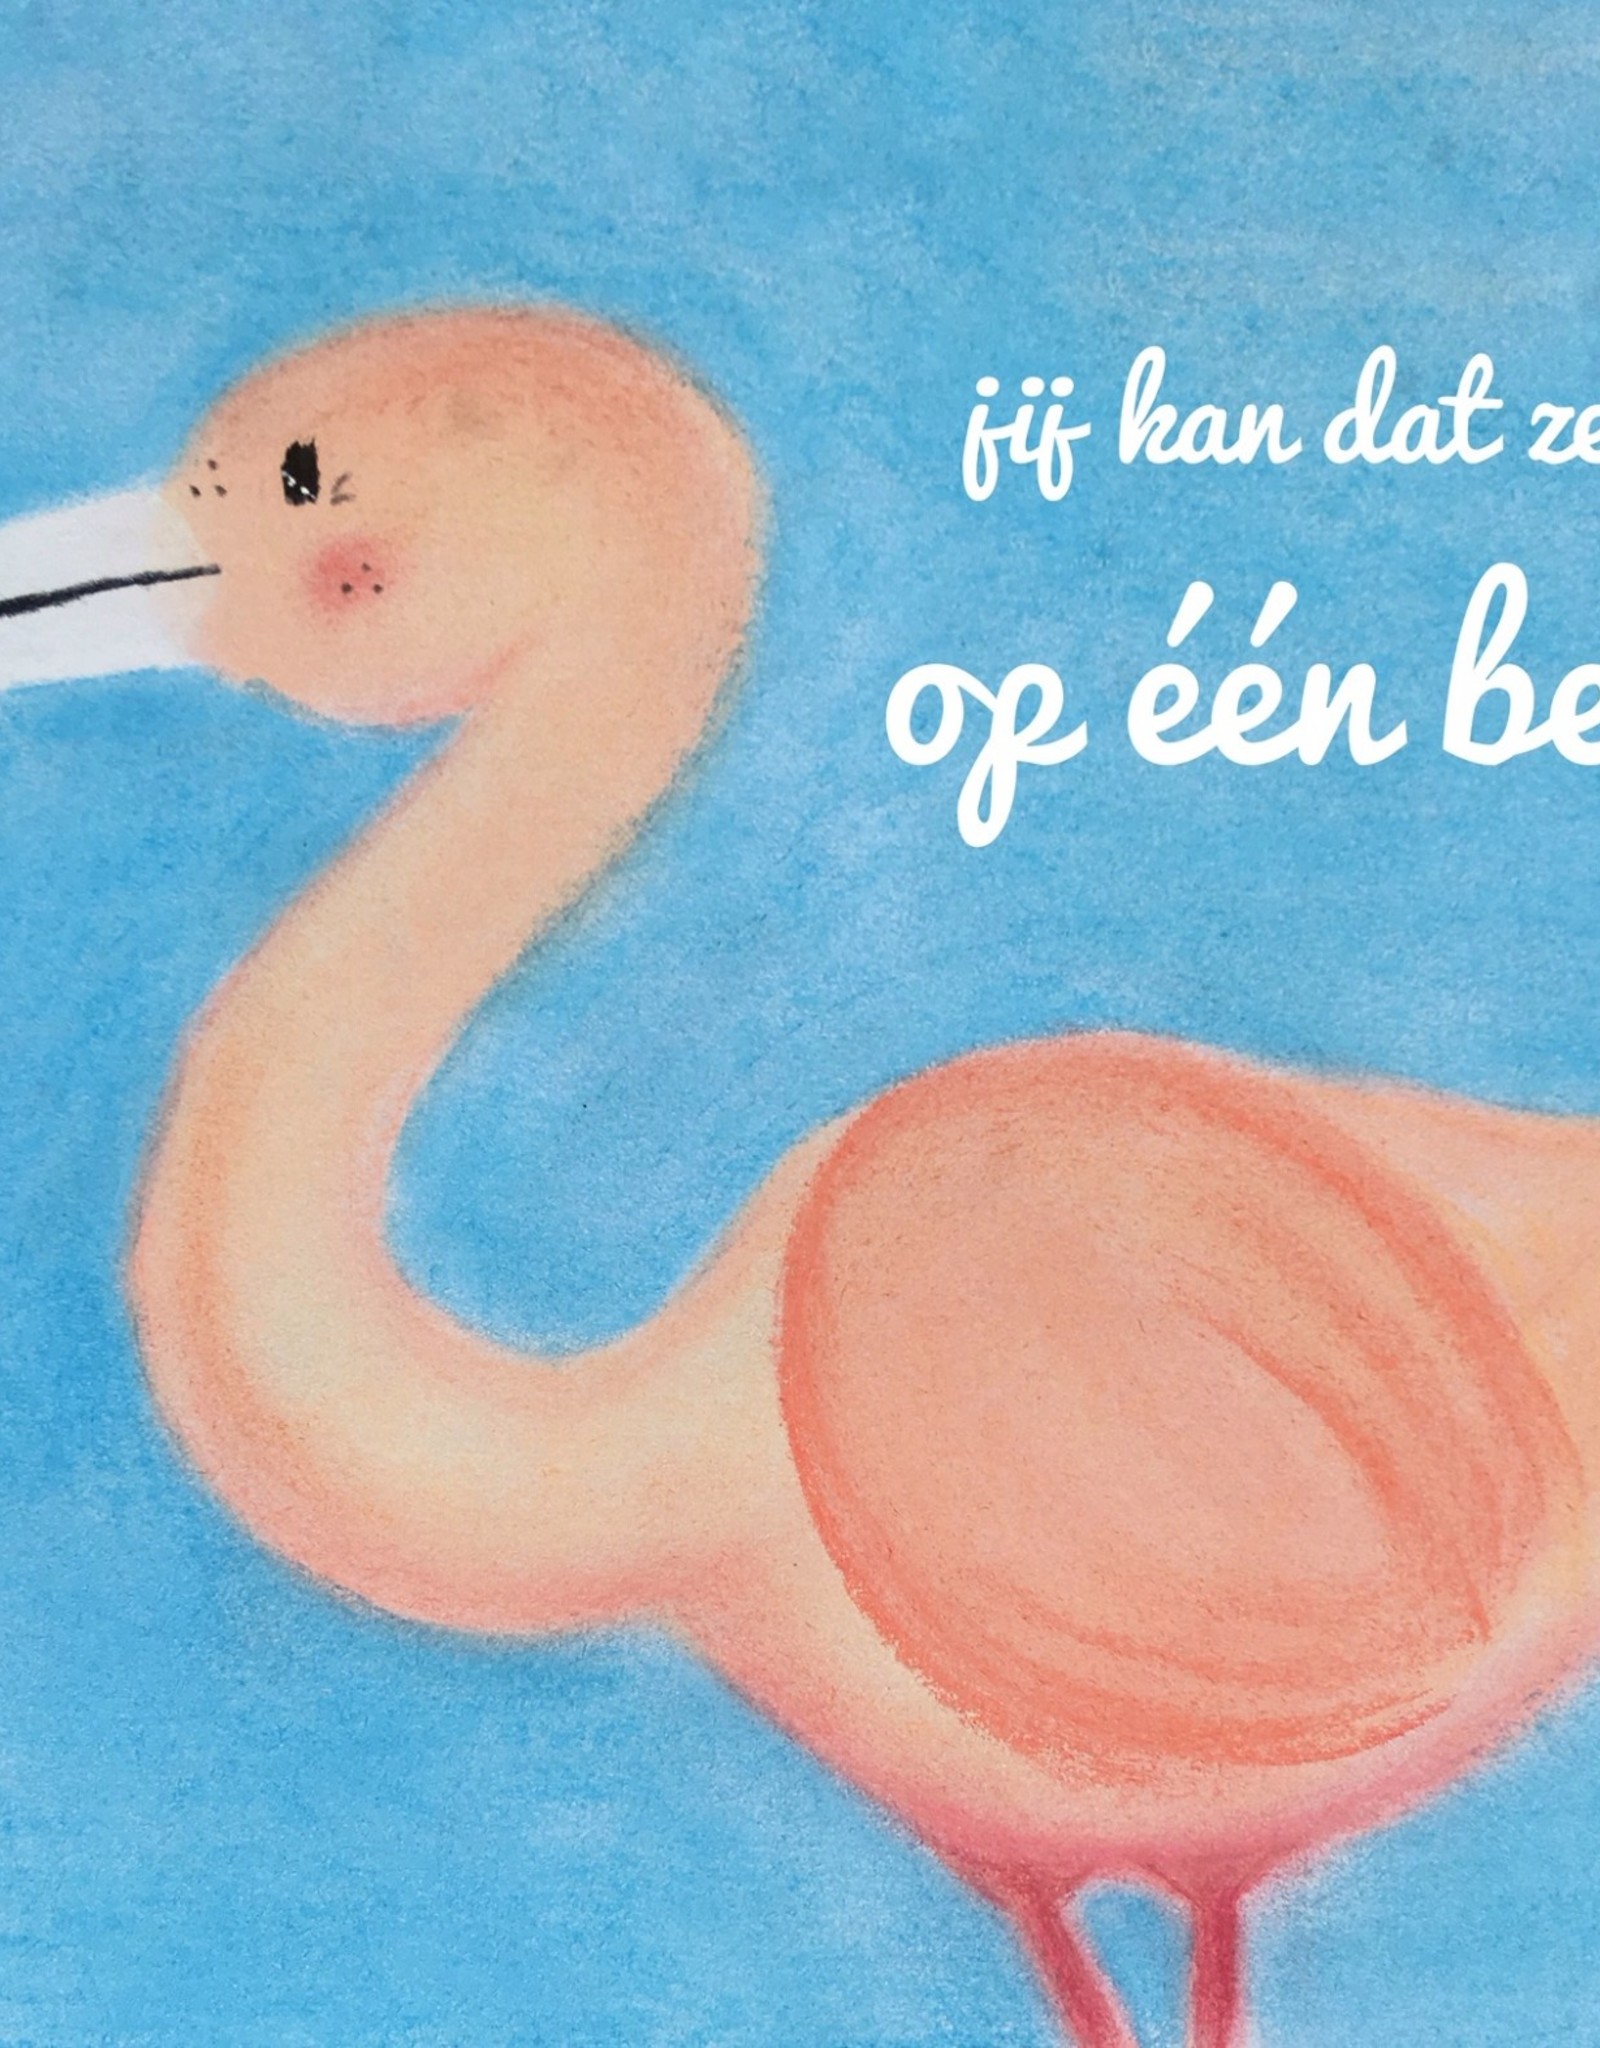 snoetjes vol sproetjes Kaartje Flamingo rechthoek - Jij kan dat zelfs op één been!